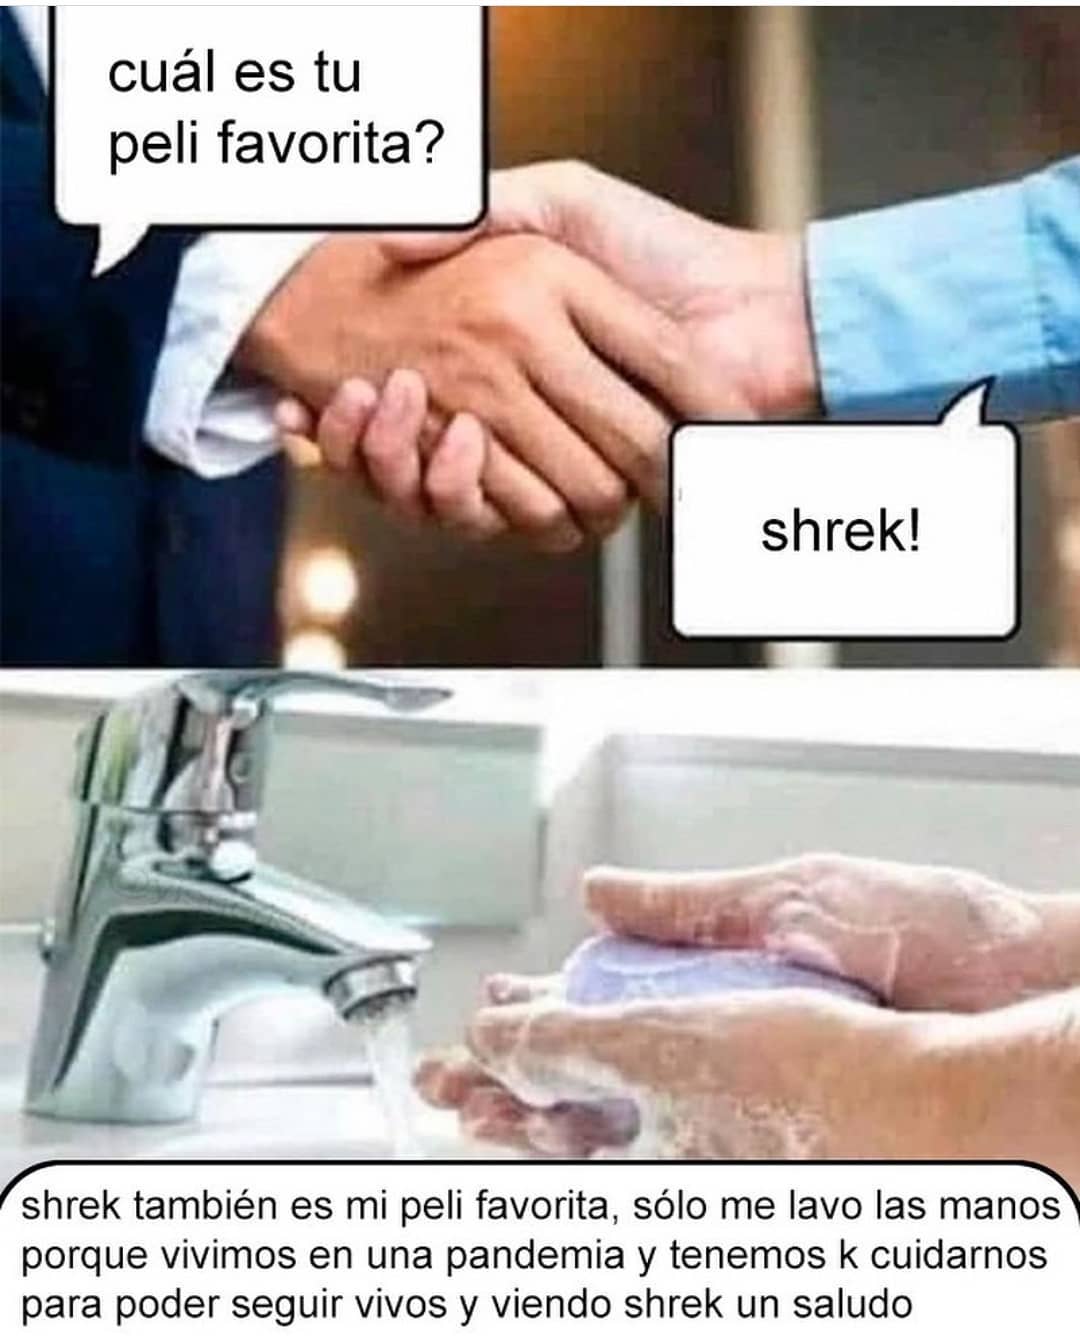 Cuál es tu peli favorita? Shrek! shrek también es mi peli favorita, sólo me lavo las manos porque vivimos en una pandemia y tenemos k cuidarnos para poder seguir vivos y viendo shrek un saludo.